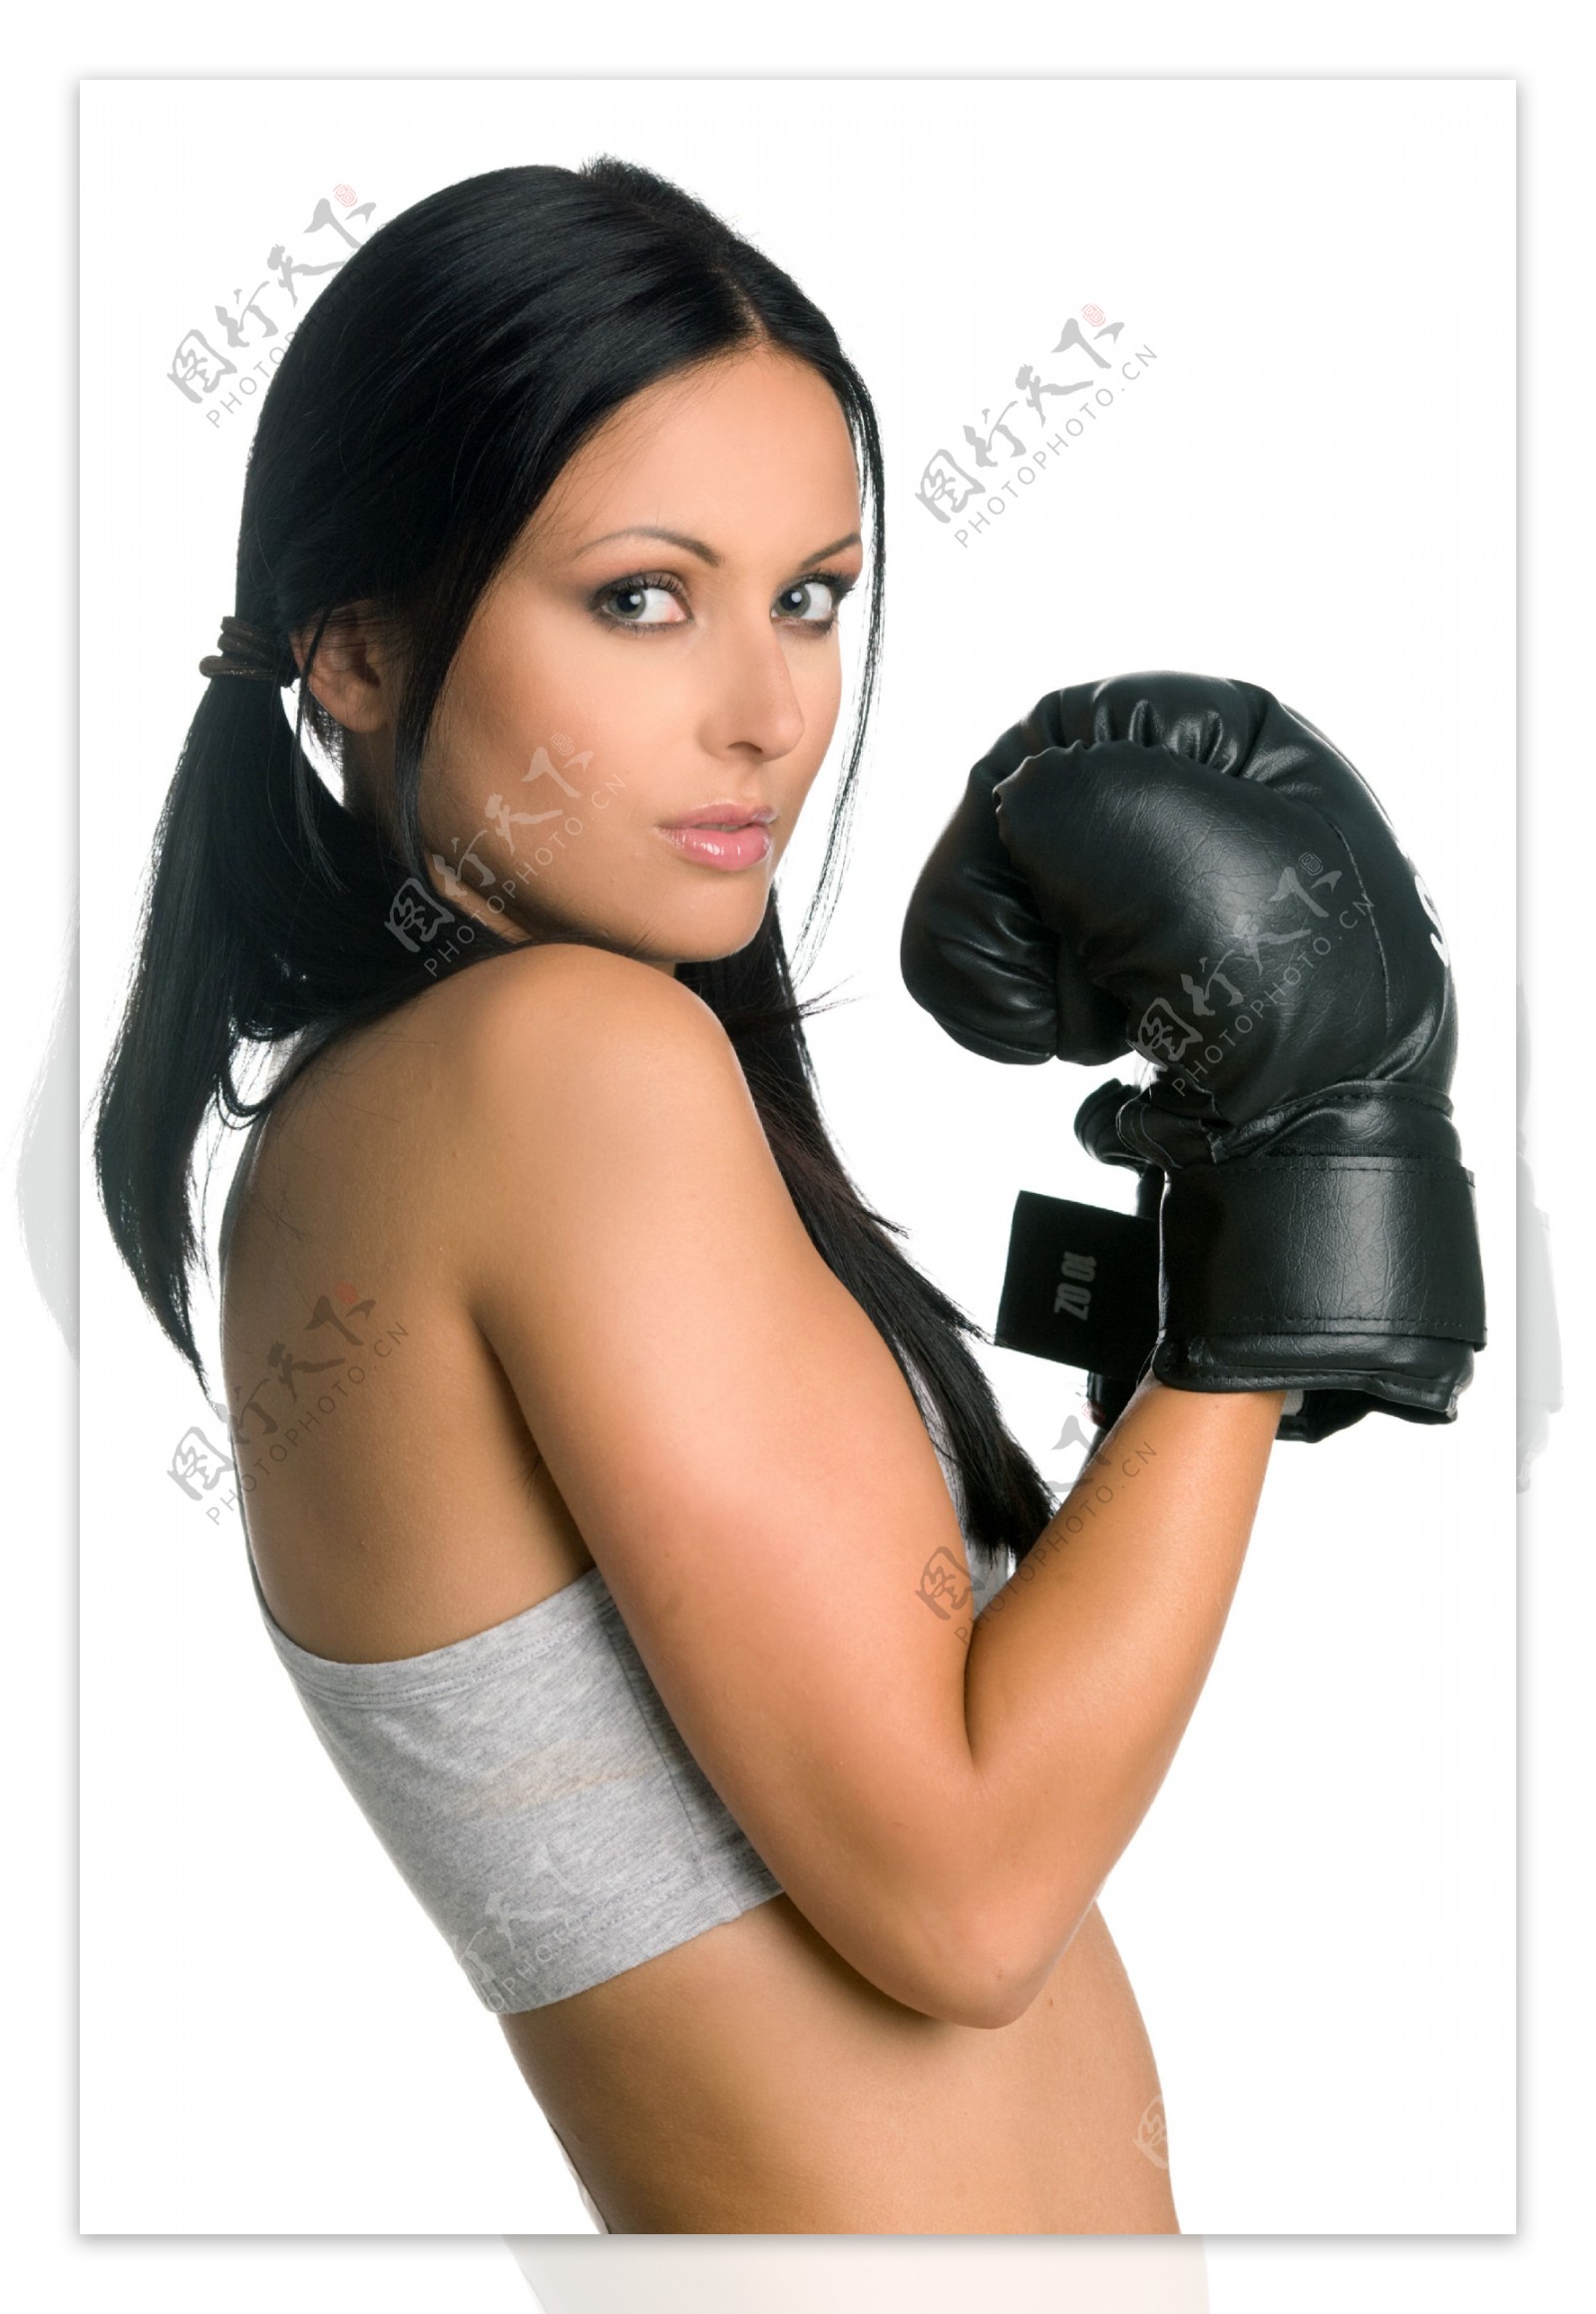 戴黑色拳手套的健身美女图片